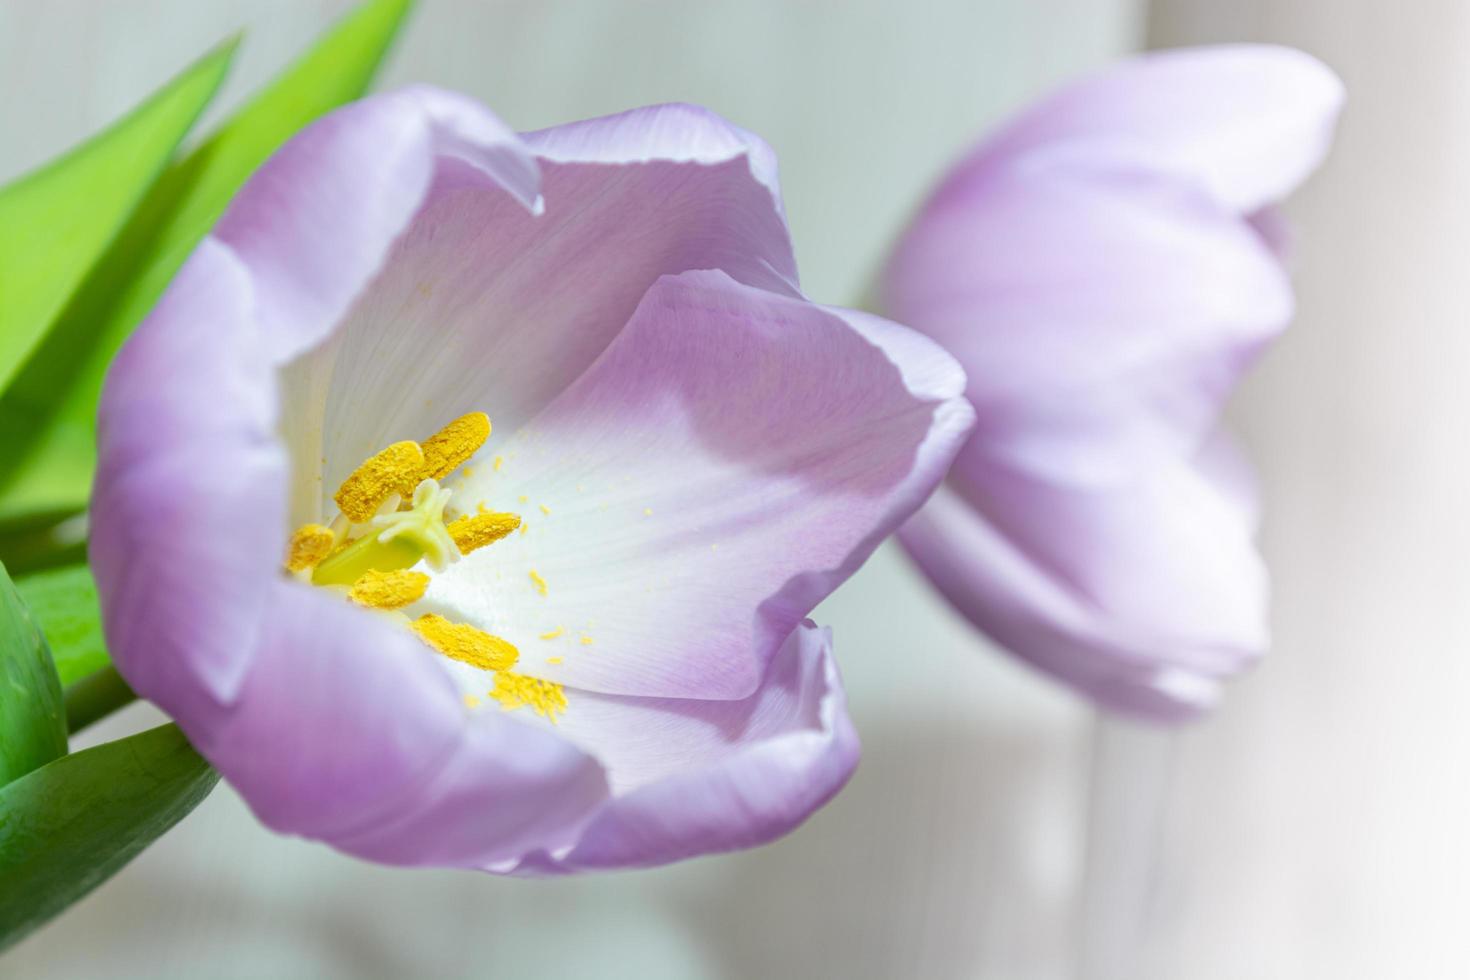 tulipas roxas sobre um fundo desfocado claro. foto